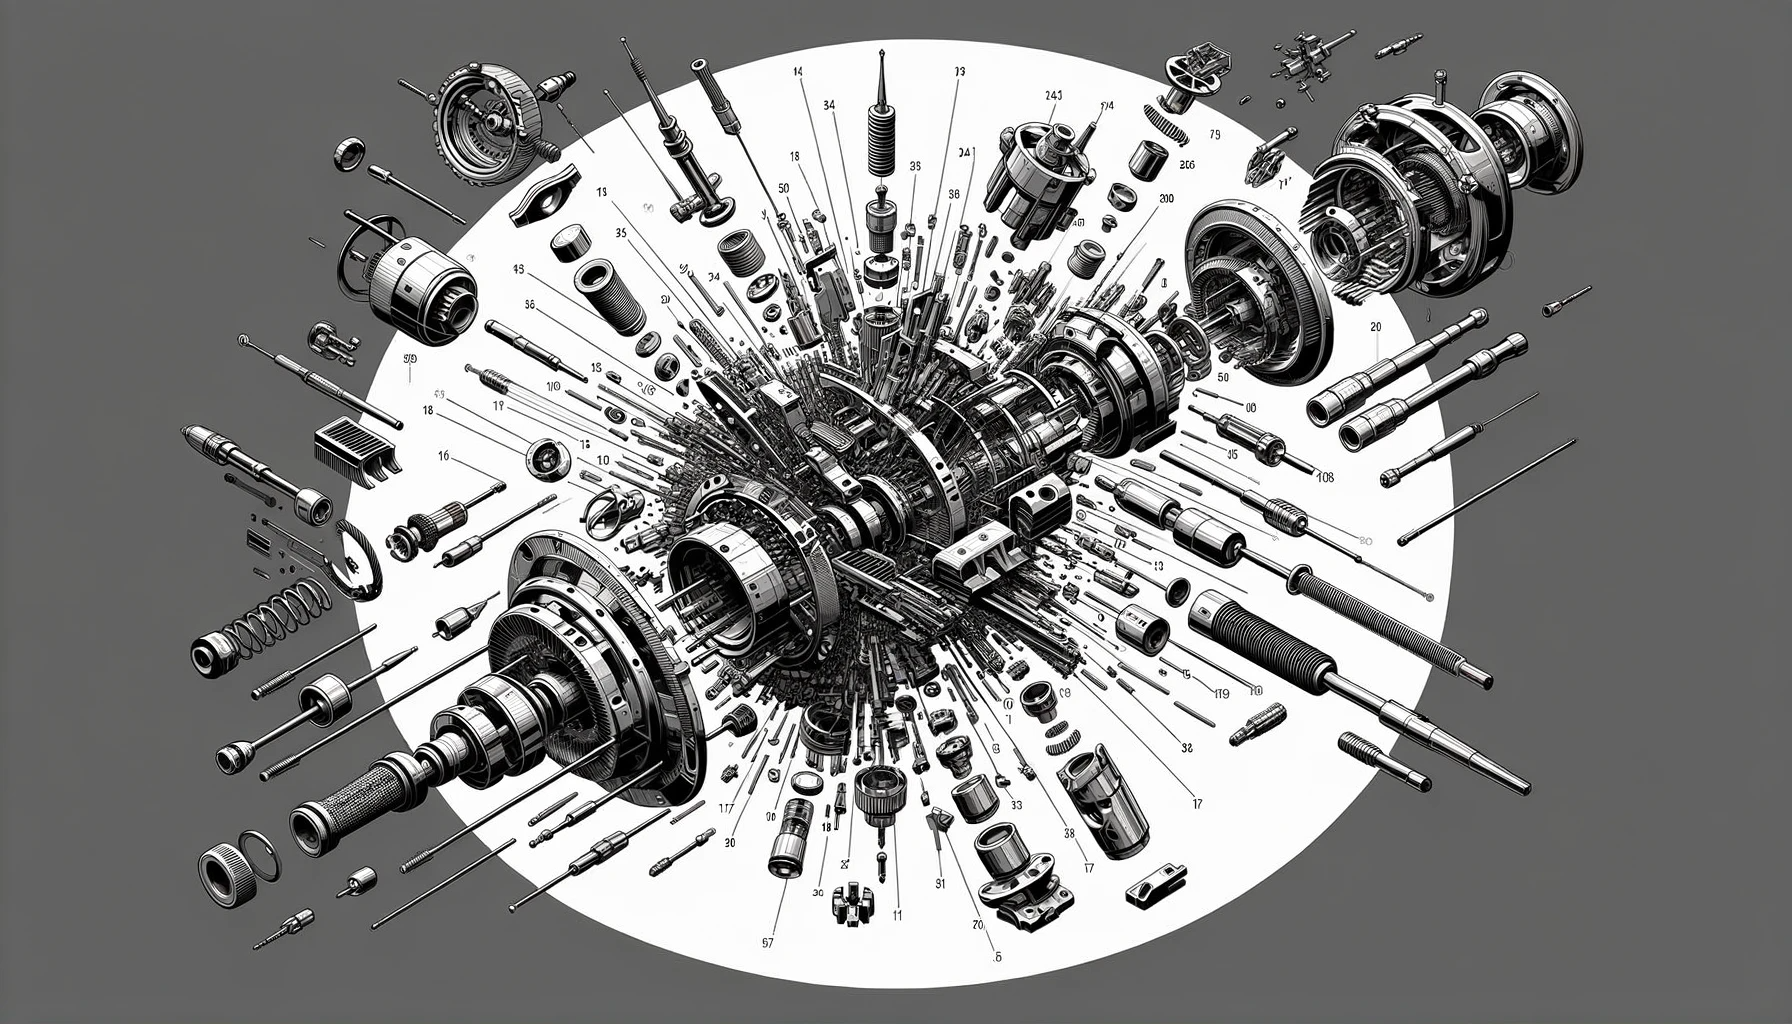 Eine technische Illustration eines Explosionsdiagramms, das ein komplexes mechanisches Gerät zeigt, das in Einzelteile zerlegt ist.